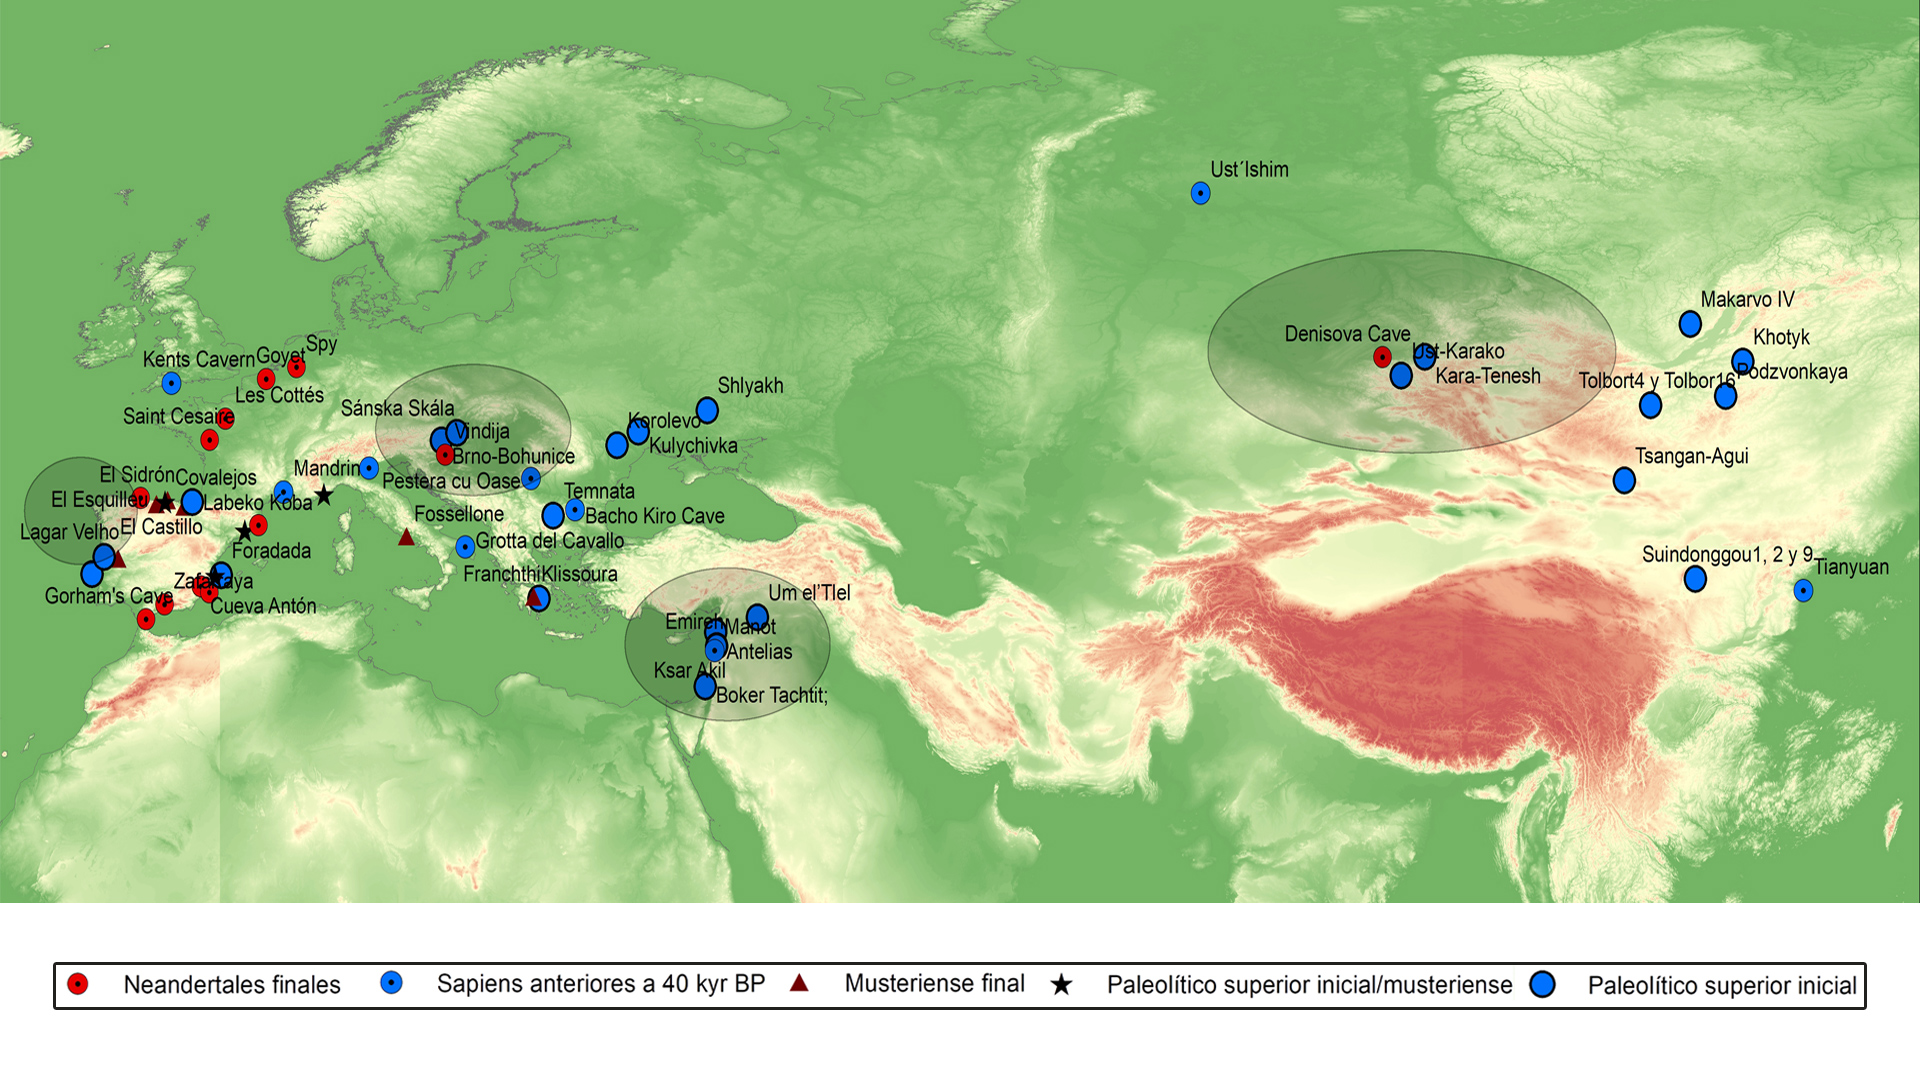 Mapa con la distribución de los principales hallazgos de neandertales tardíos, sapiens anteriores al 40.000 BP, así como yacimientos musterienses tardíos y de Paleolítico superior inicial. 